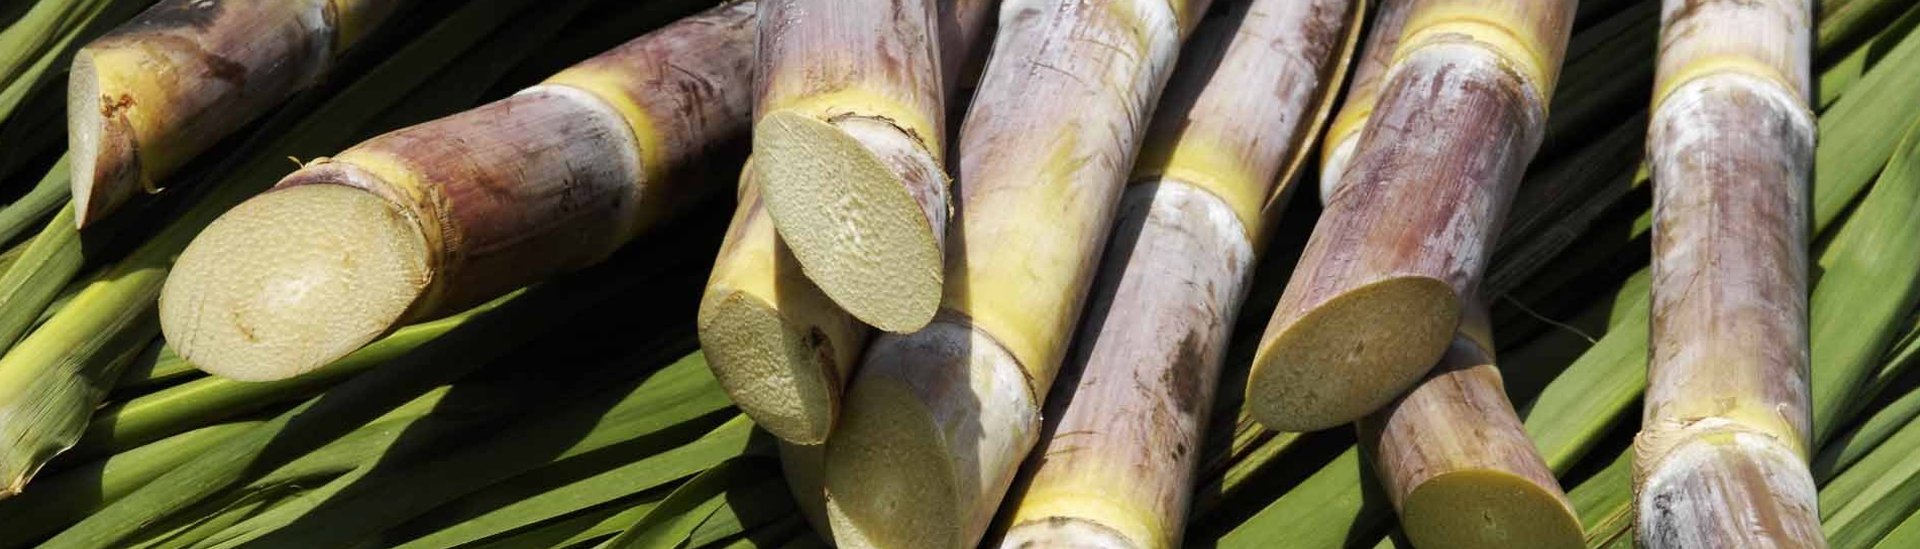 Sugarcane based